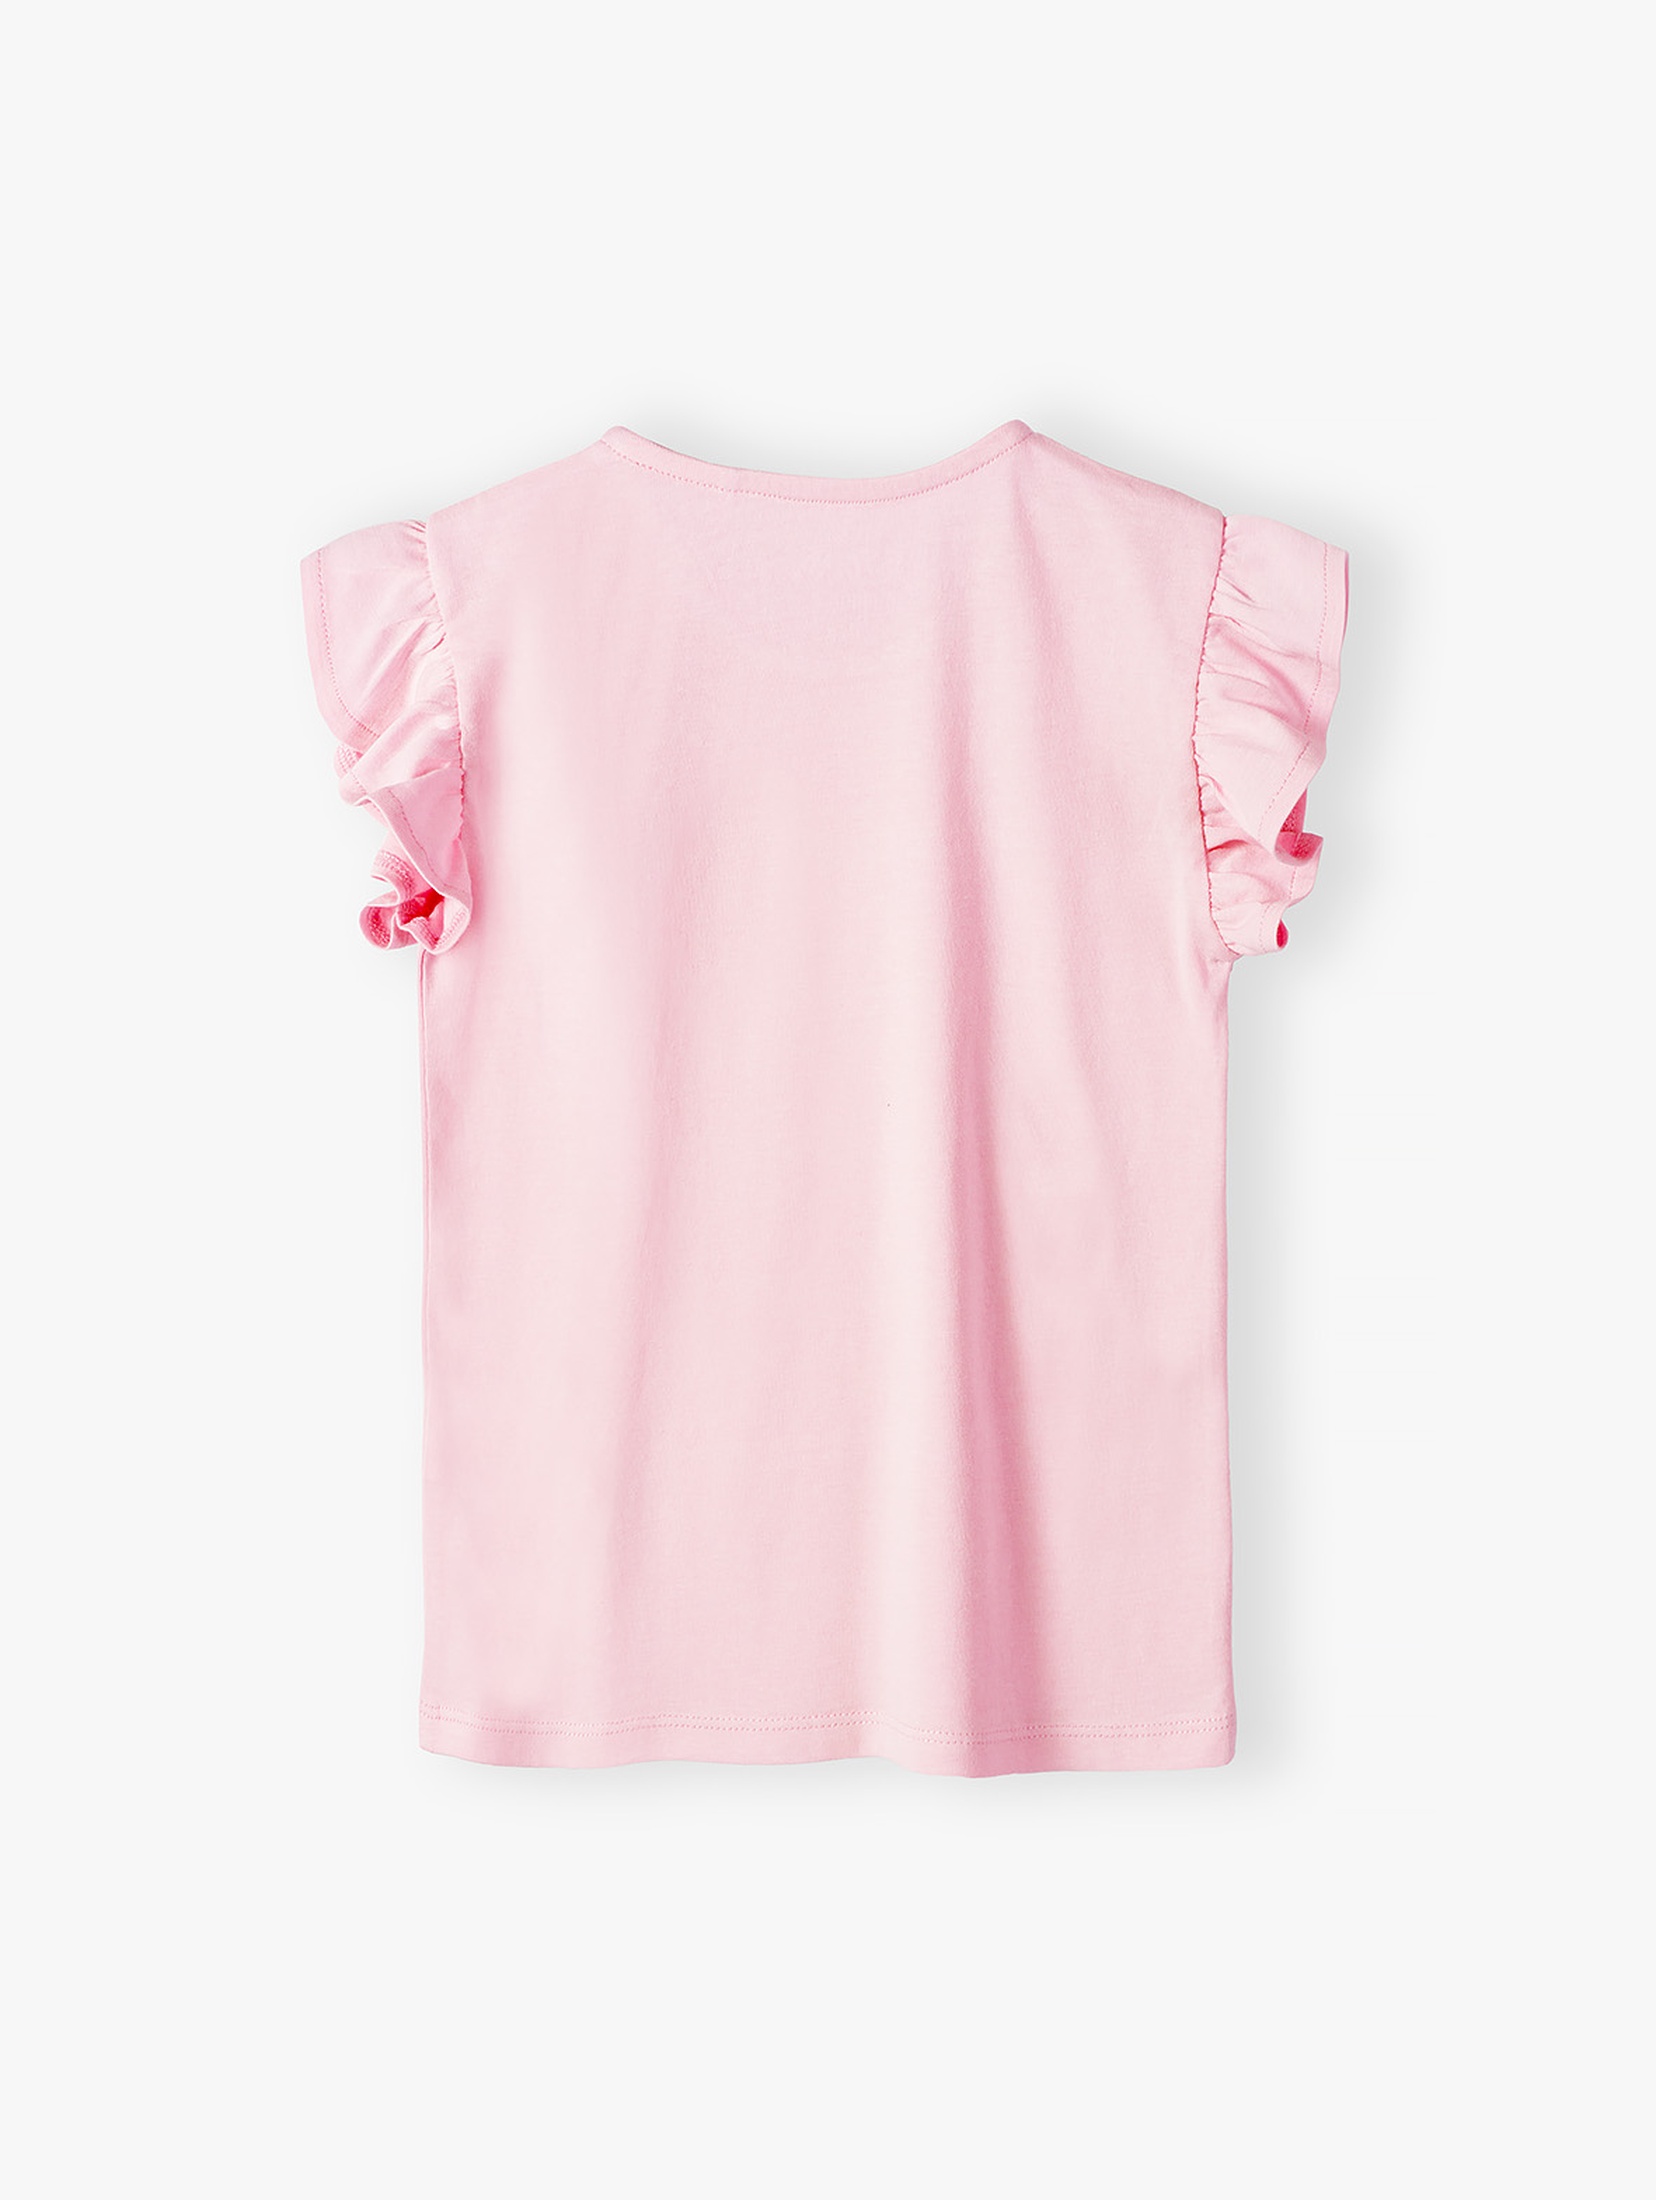 Różowy bawełniany t-shirt dla dziewczynki - 5.10.15.